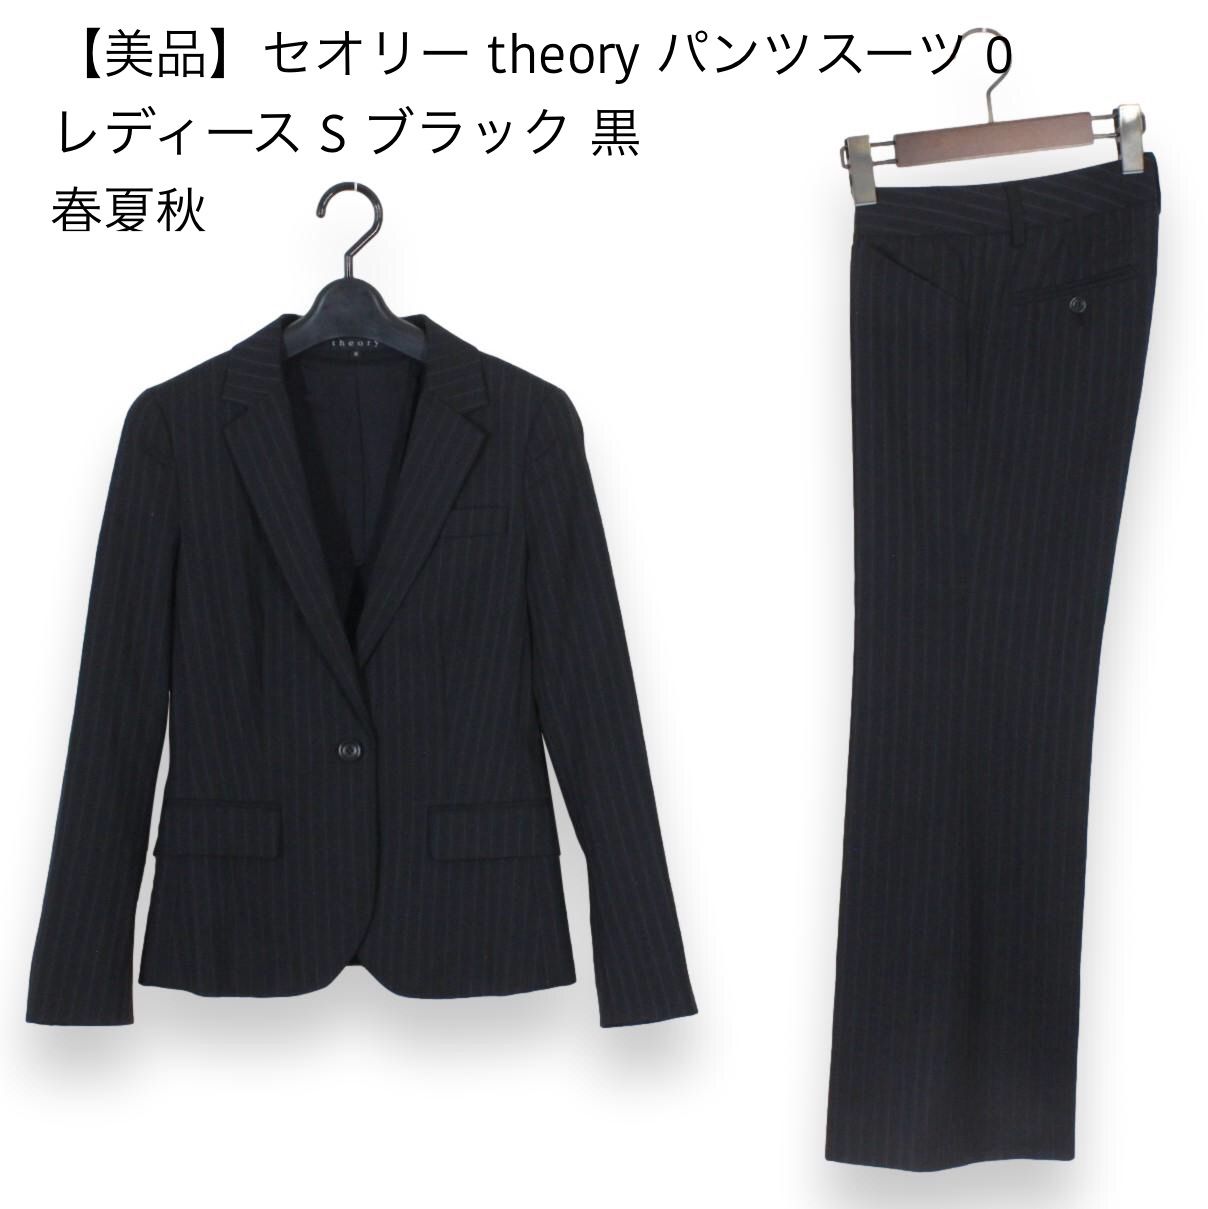 03【美品】セオリー theory パンツスーツ 0 レディース S ブラック-